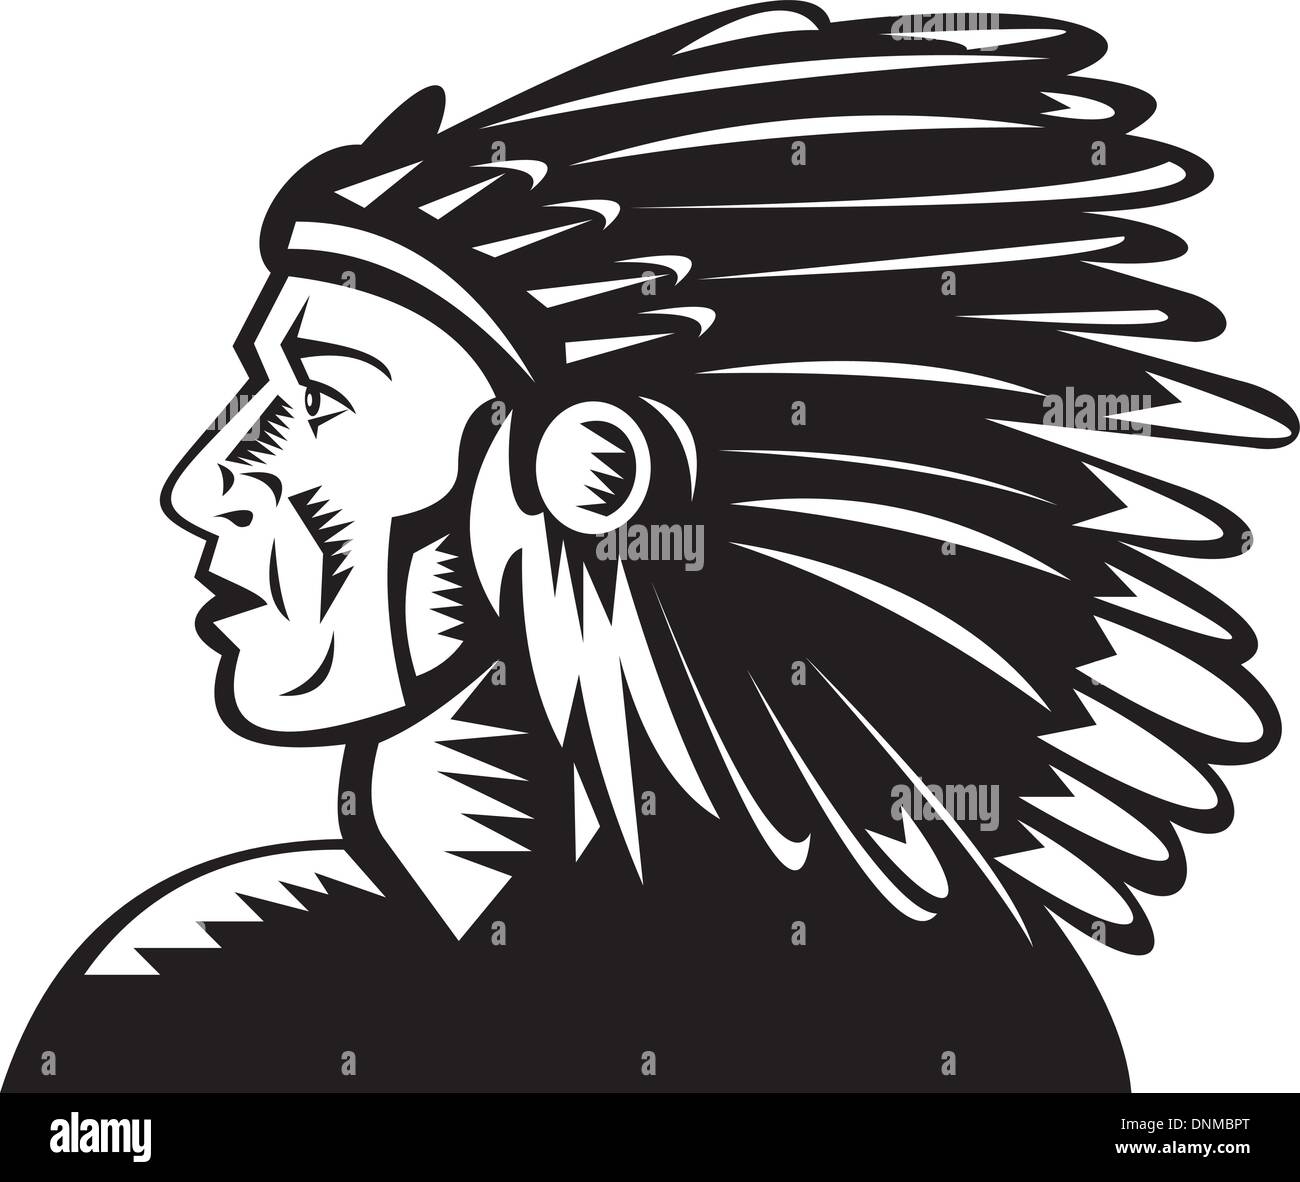 Ilustración de un jefe indio americano nativo con tocado Ilustración del Vector